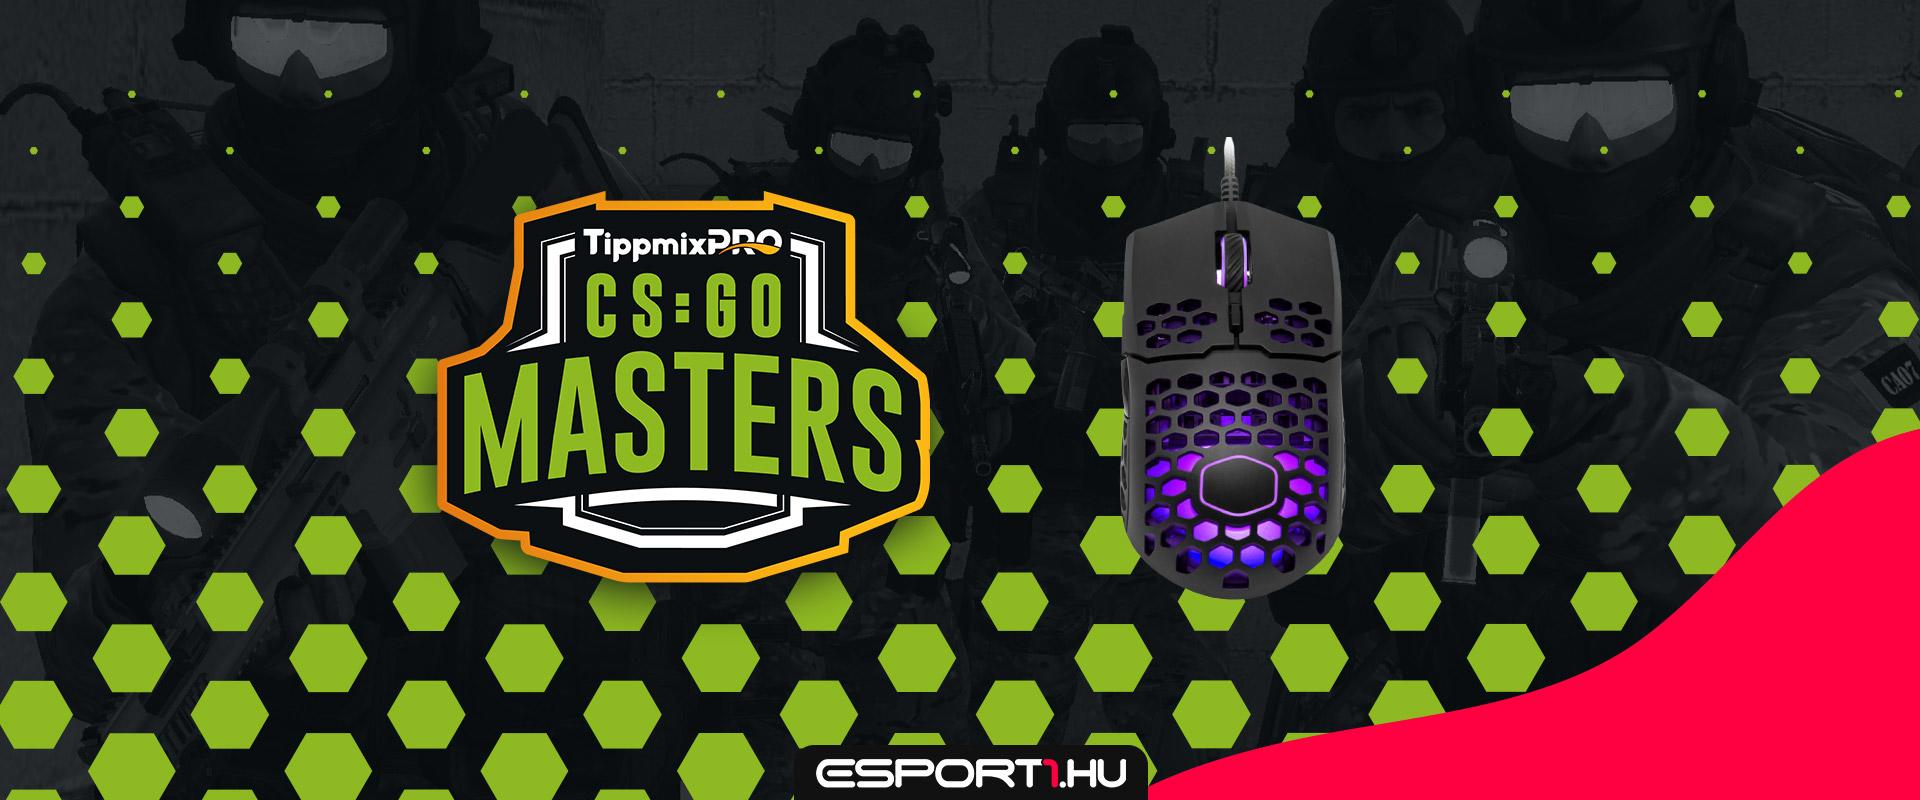 Nyerj Cooler Master gamer csomagot a TippmixPro CS:GO Masters eheti közvetítésein!